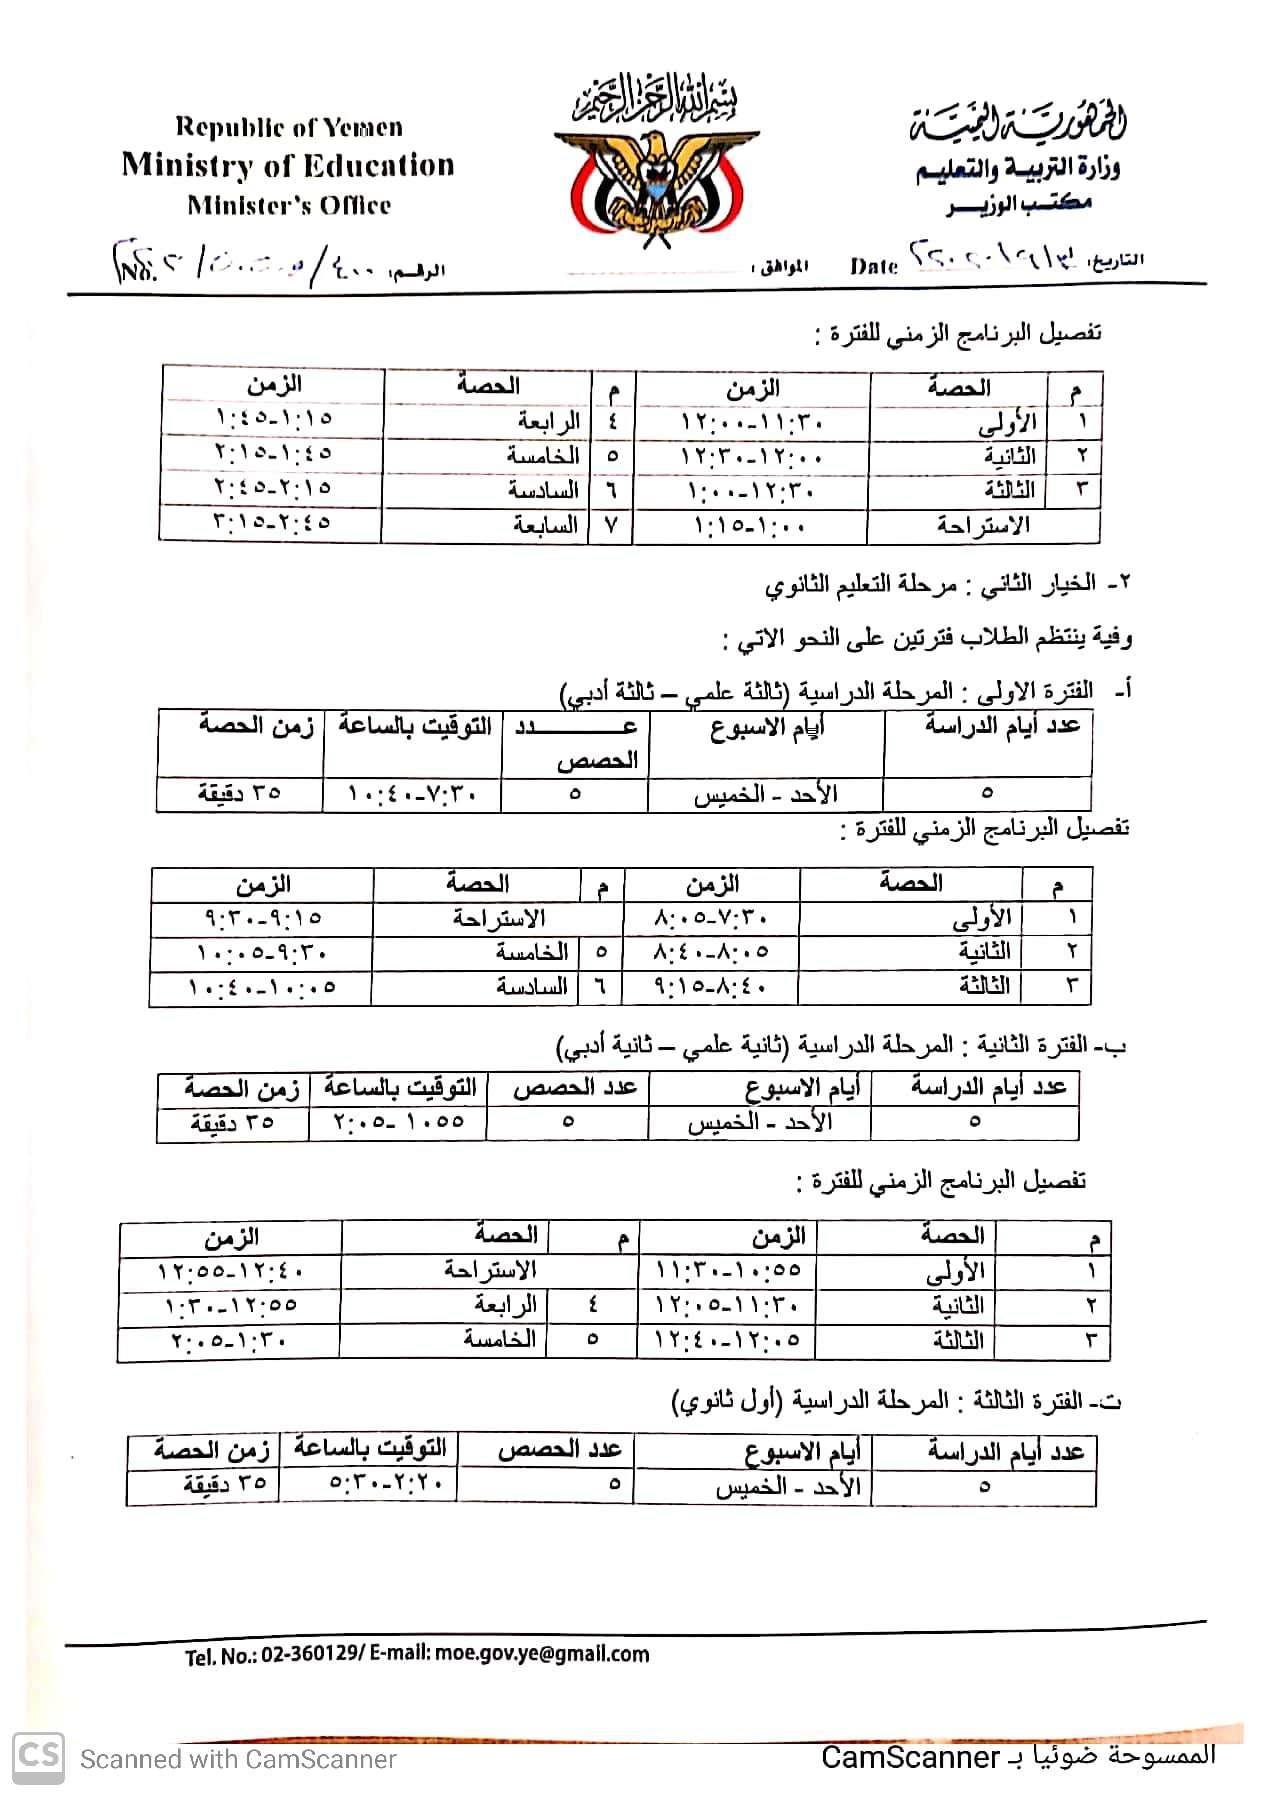 تربية حكومة هادي تعلن بدء العام الدراسي الجديد وتضع 3 خيارات لانتظام الدراسة في المرحلة الثانوية موقع يمنات الأخباري